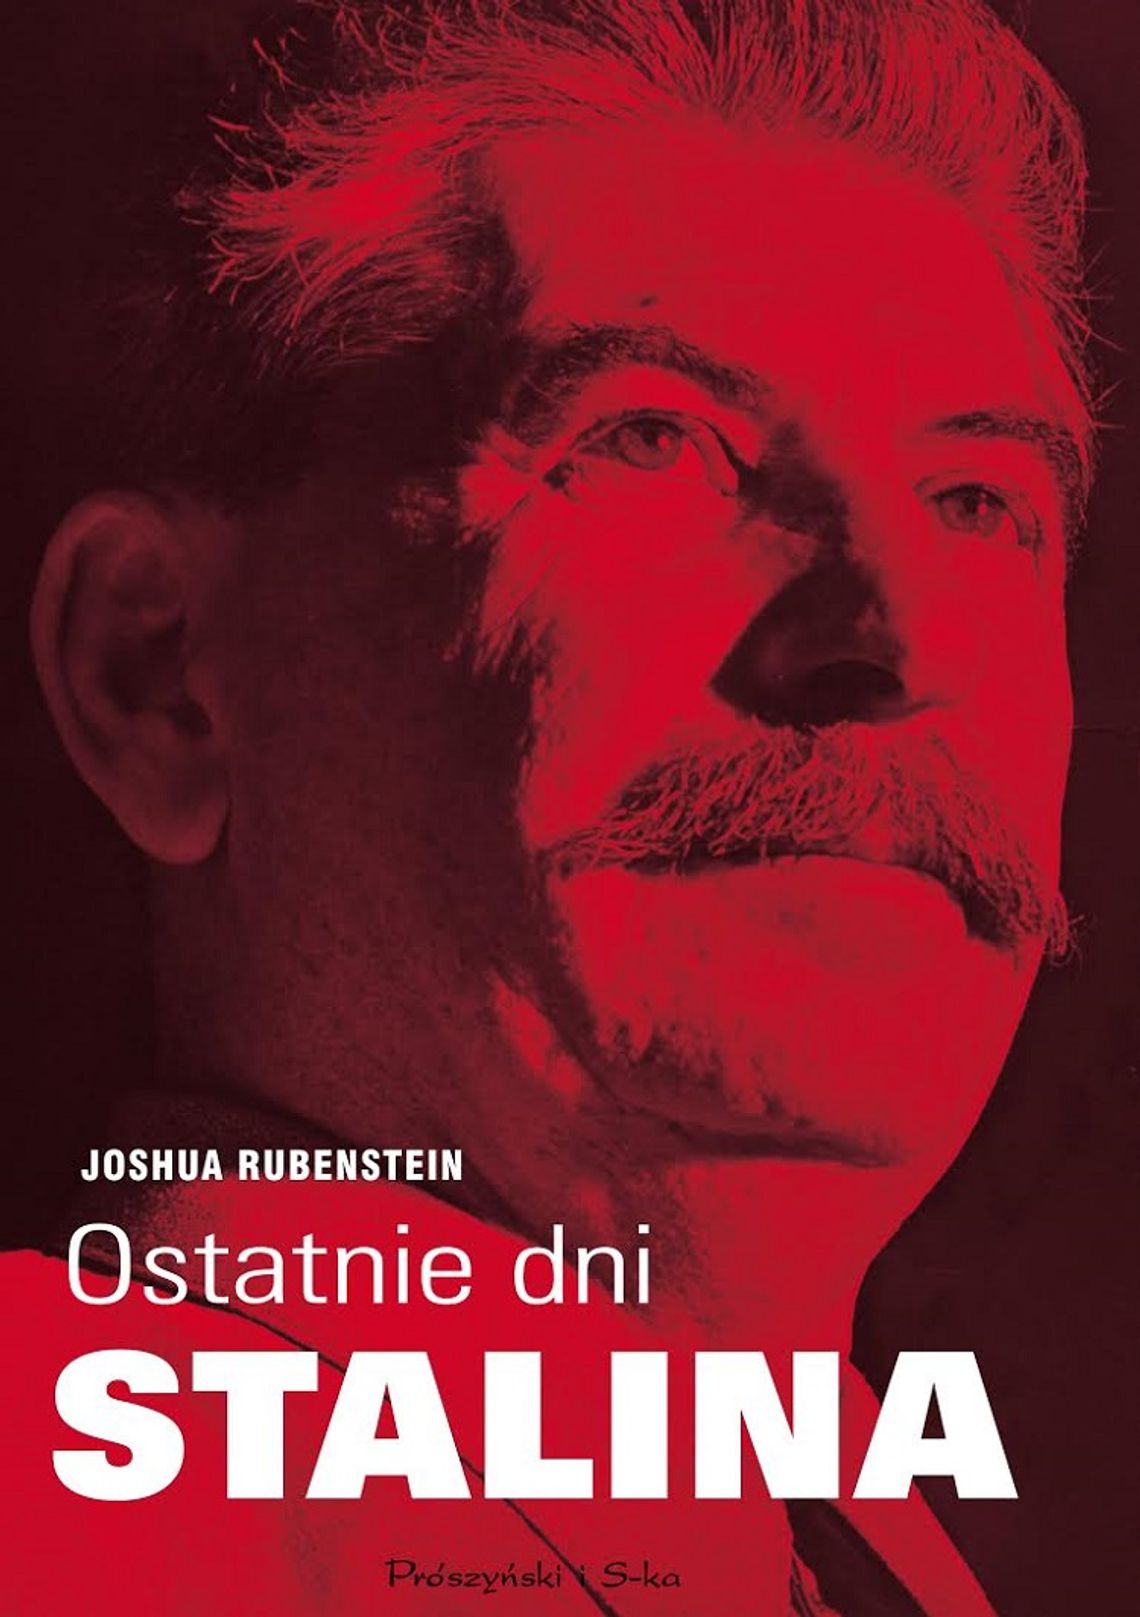 Joshua Rubenstein "Ostatnie dni Stalina"; wyd. Prószyński i S-ka